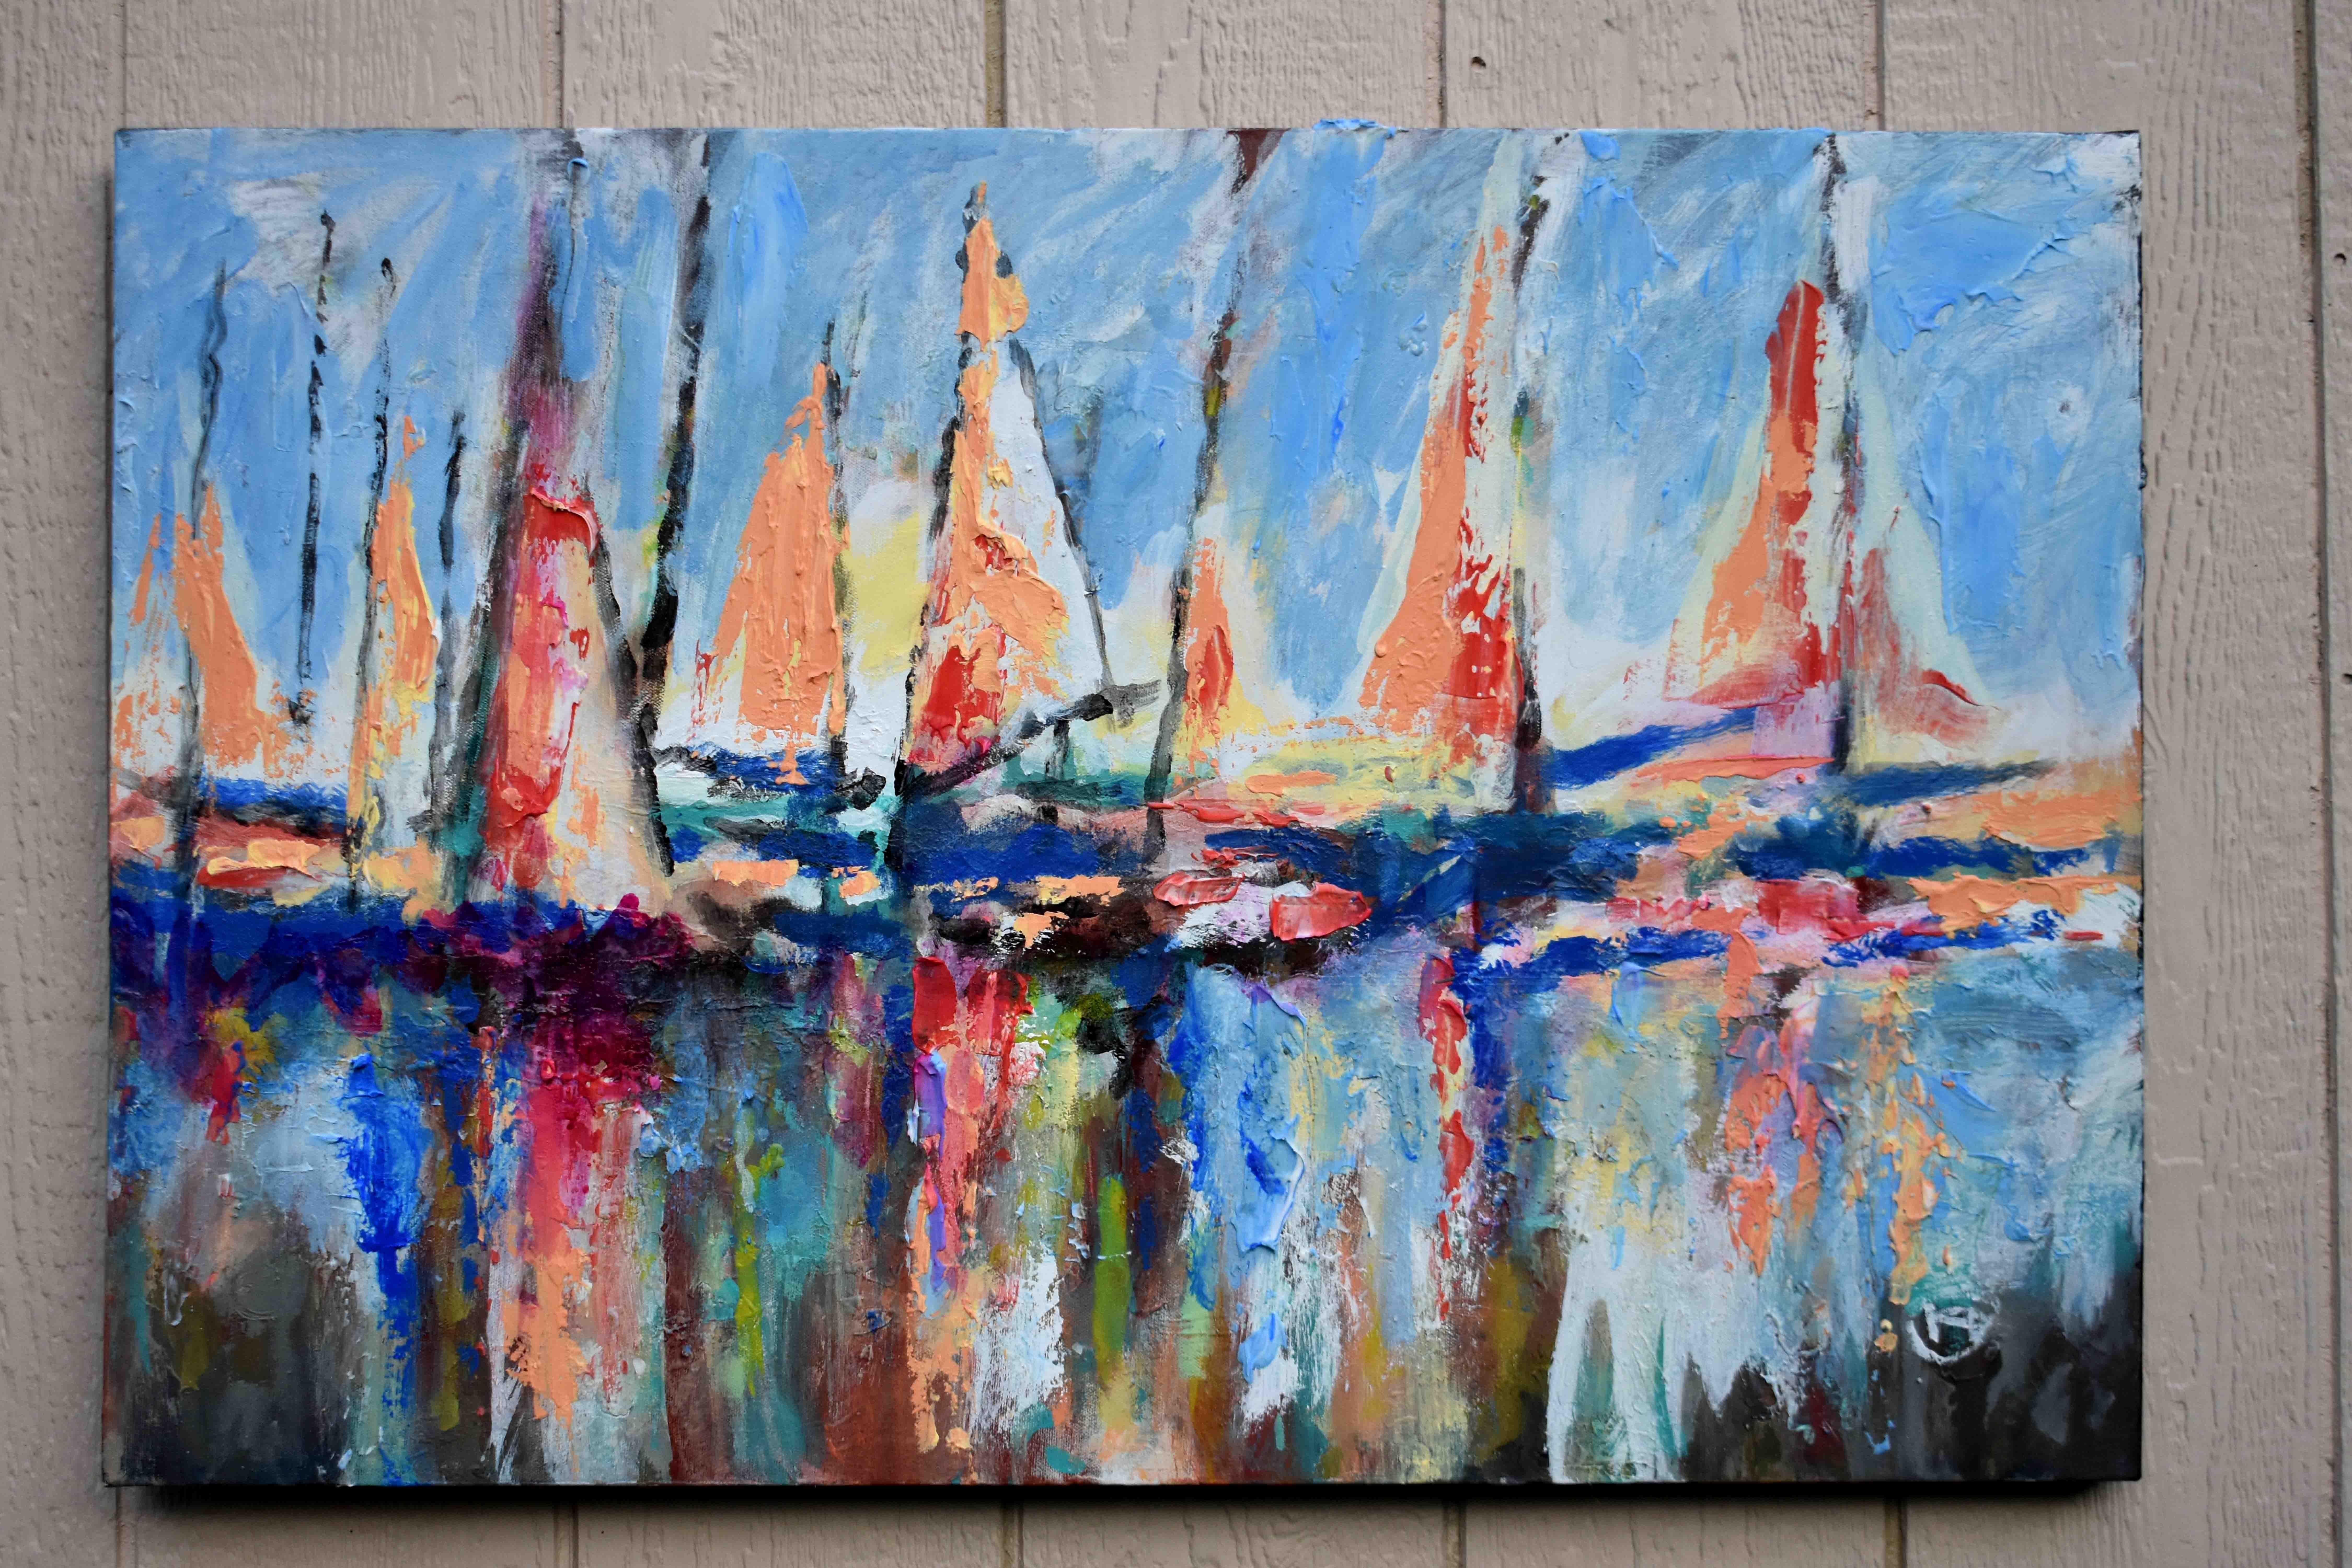 abstract sailboat paintings